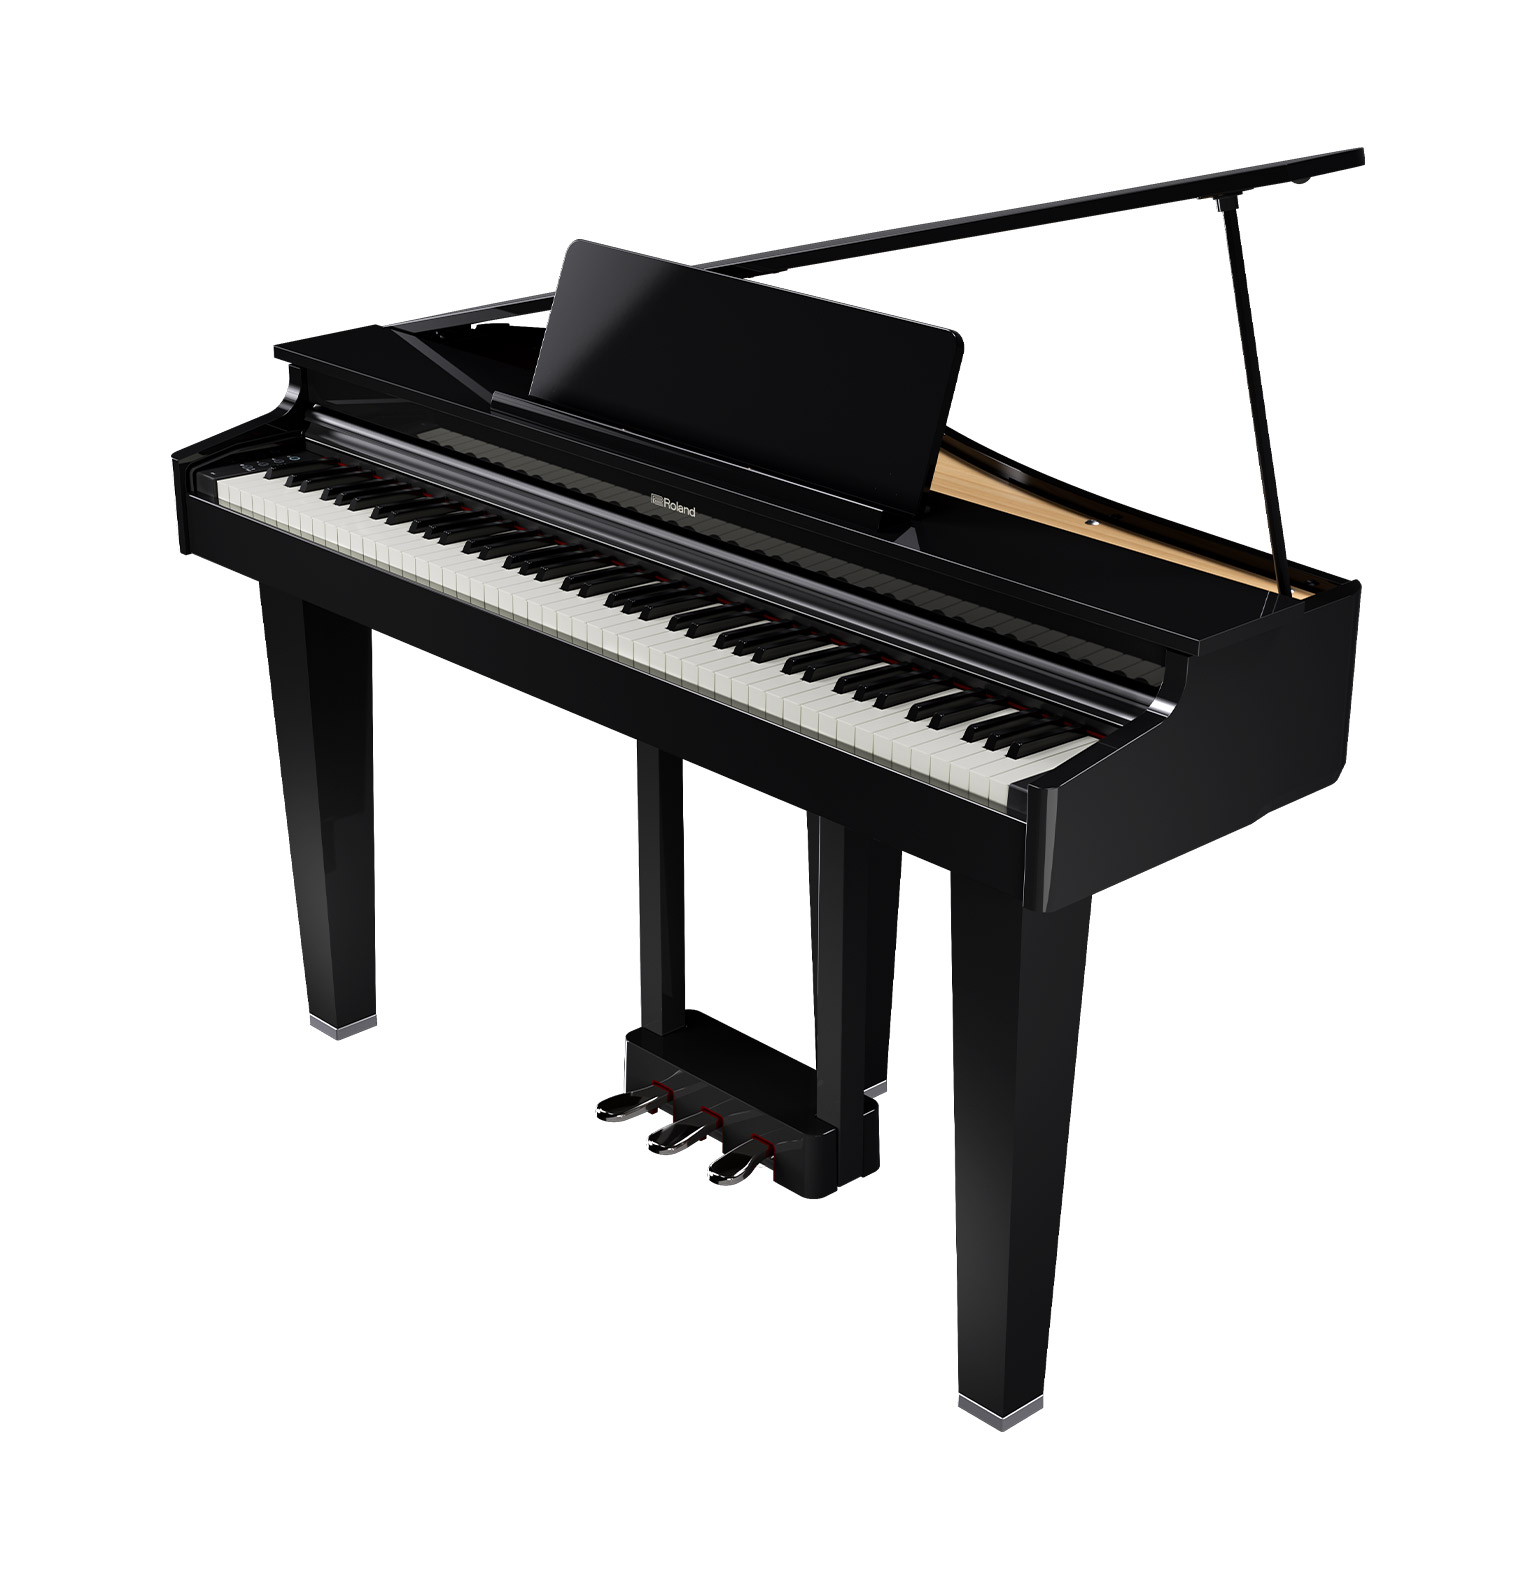 【新製品】奥行70cm!!グランドピアノ・デザインの電子ピアノ「GP-3」入荷しました！みなとみらい店にてお試しいただけます。 憧れの‘グランドピアノ’をご自宅に。 ローランドのGPシリーズの中で最もコンパクトでリーズナブルな「GP-3」が新発売。 優雅でクラシカルな雰囲気のグランド型のデザインで、 […]